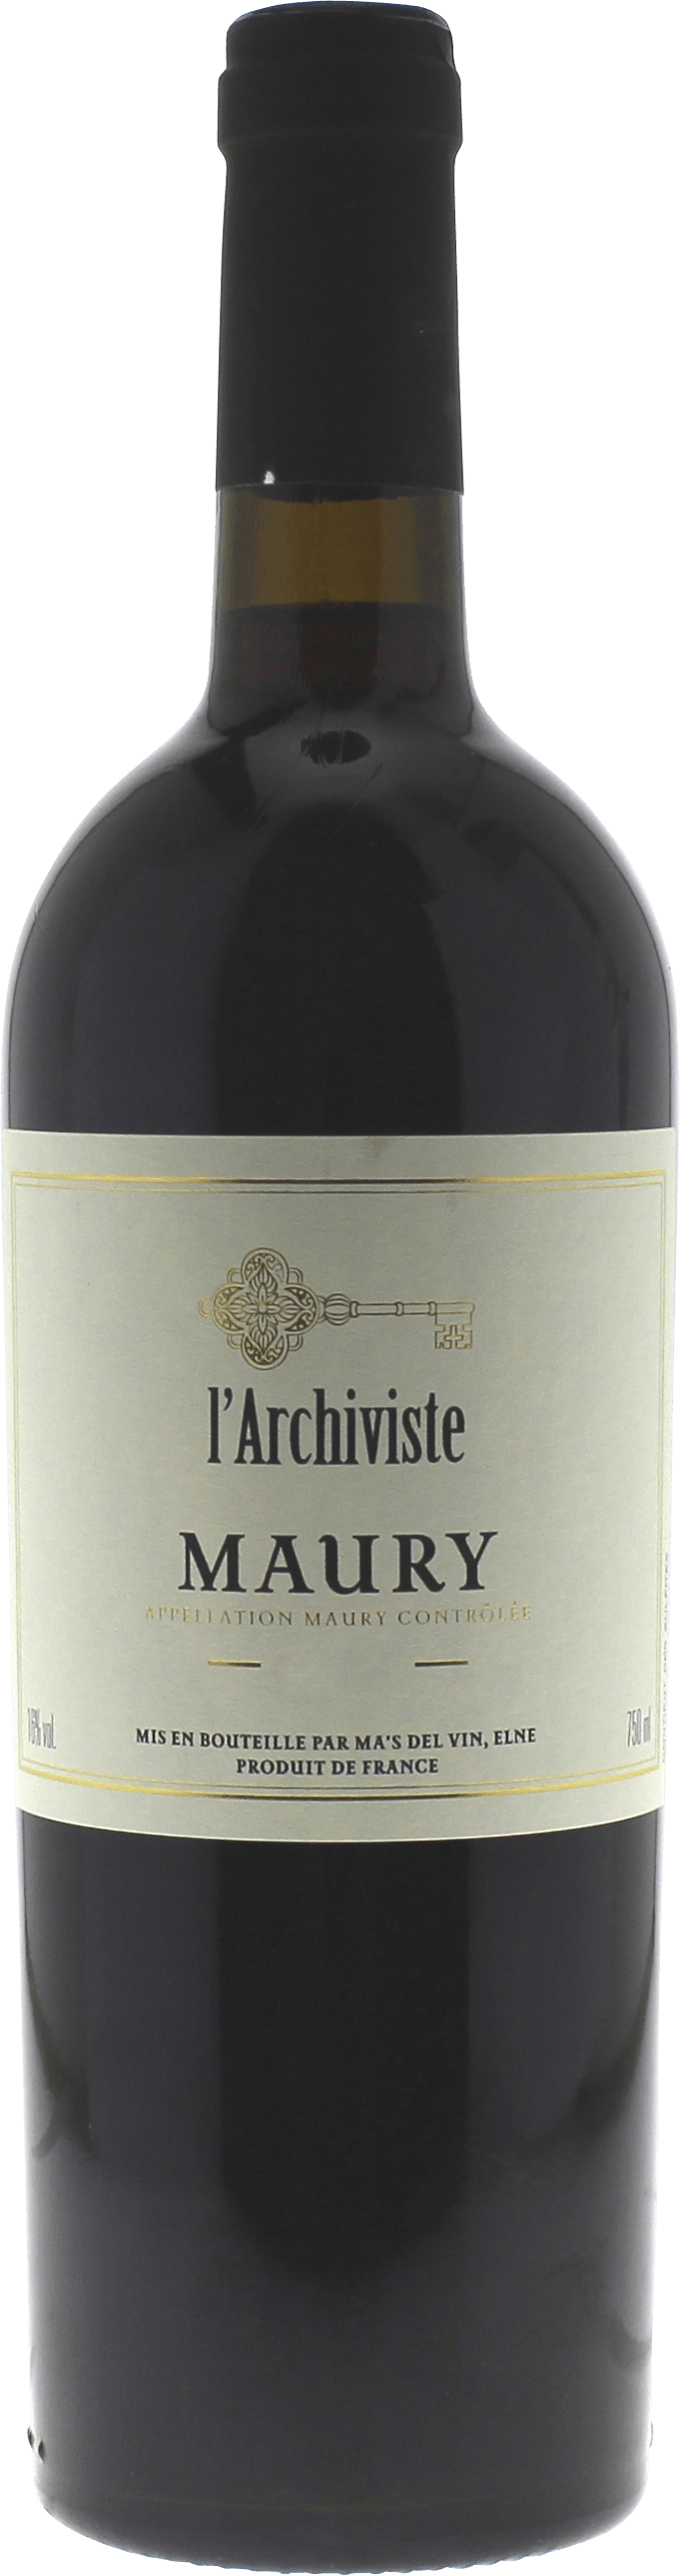 Maury l'archiviste 1987 Vin doux naturel Maury, Vin doux naturel